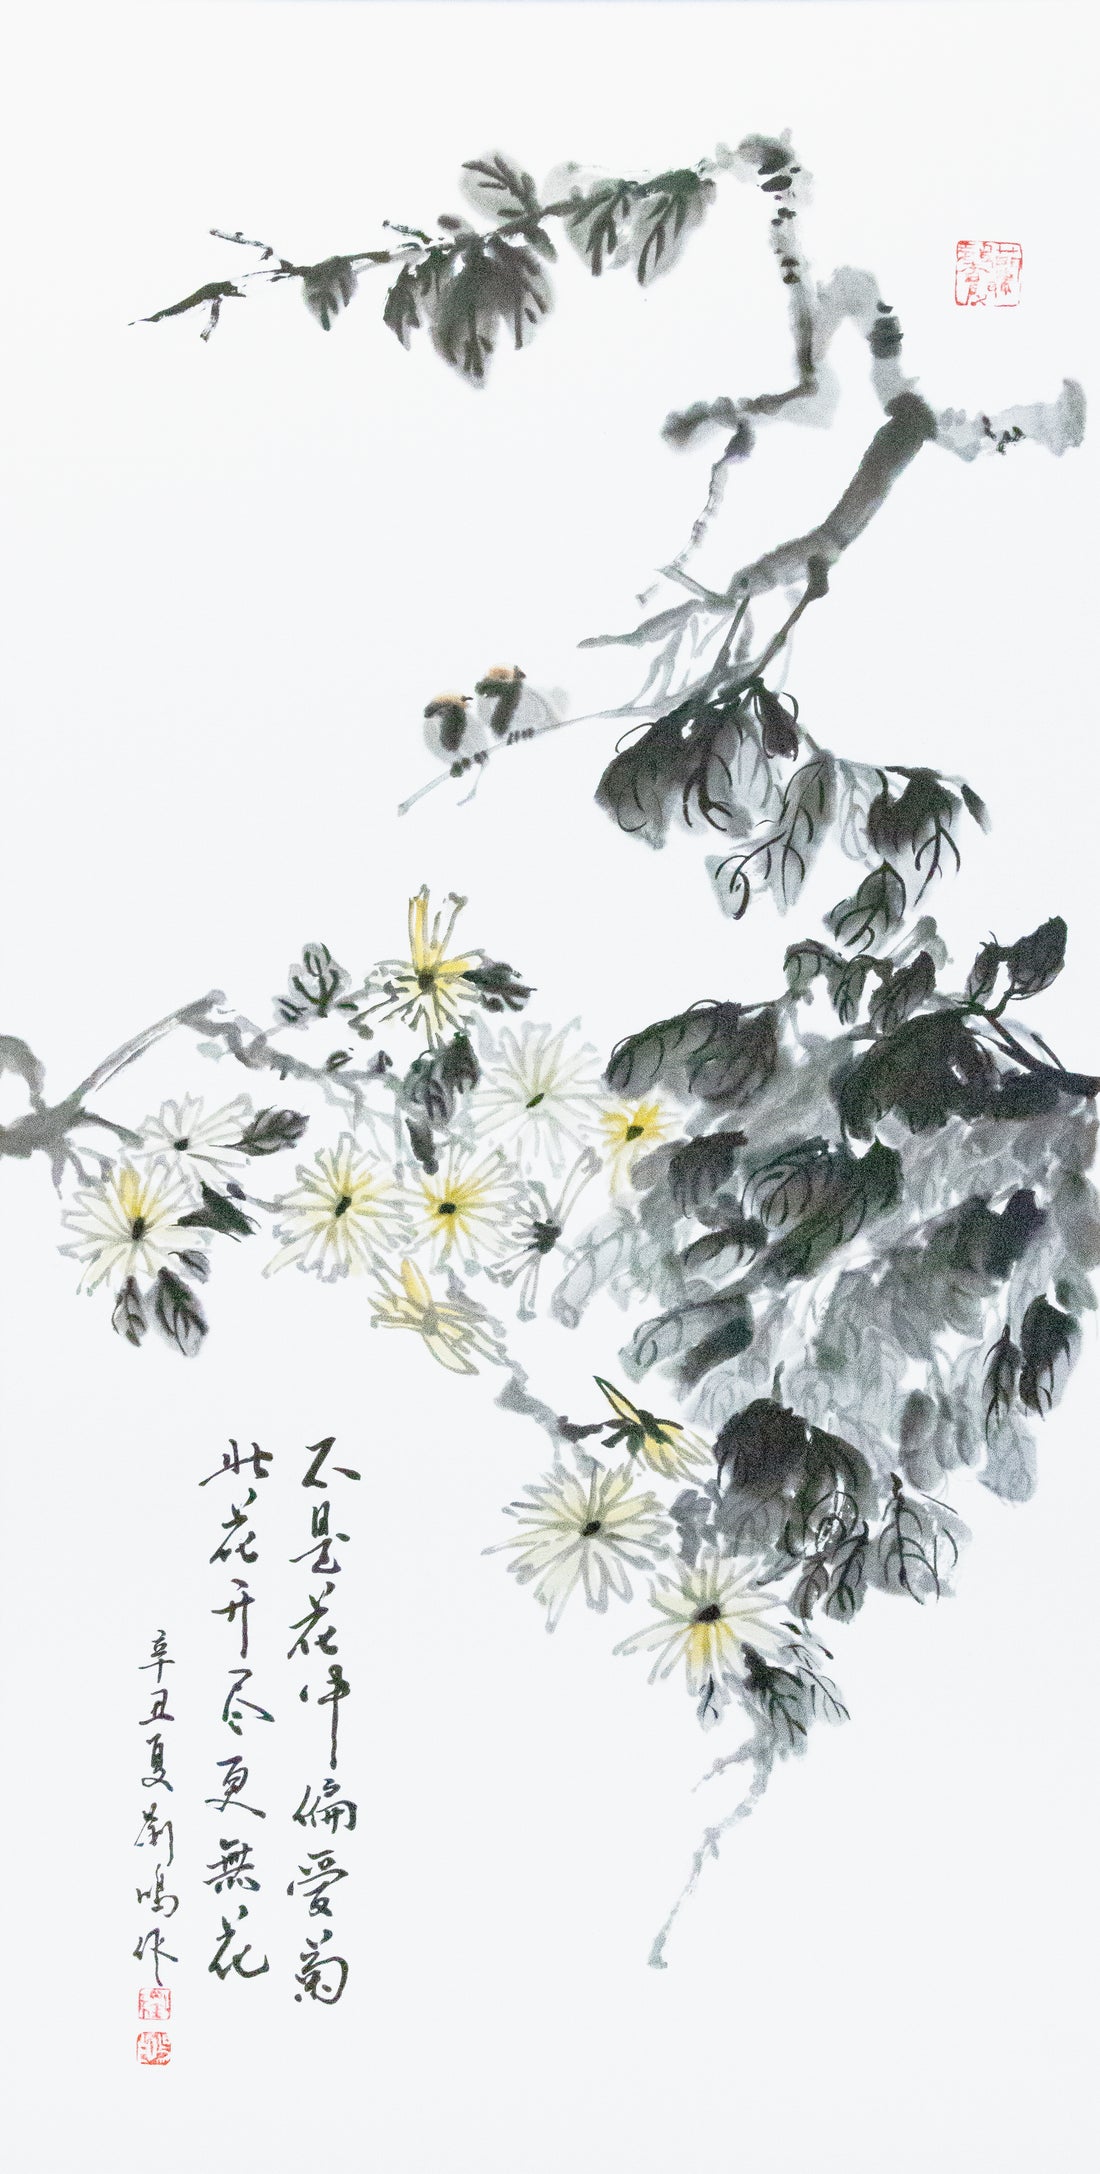 条屏-菊花 Chrysanthemum